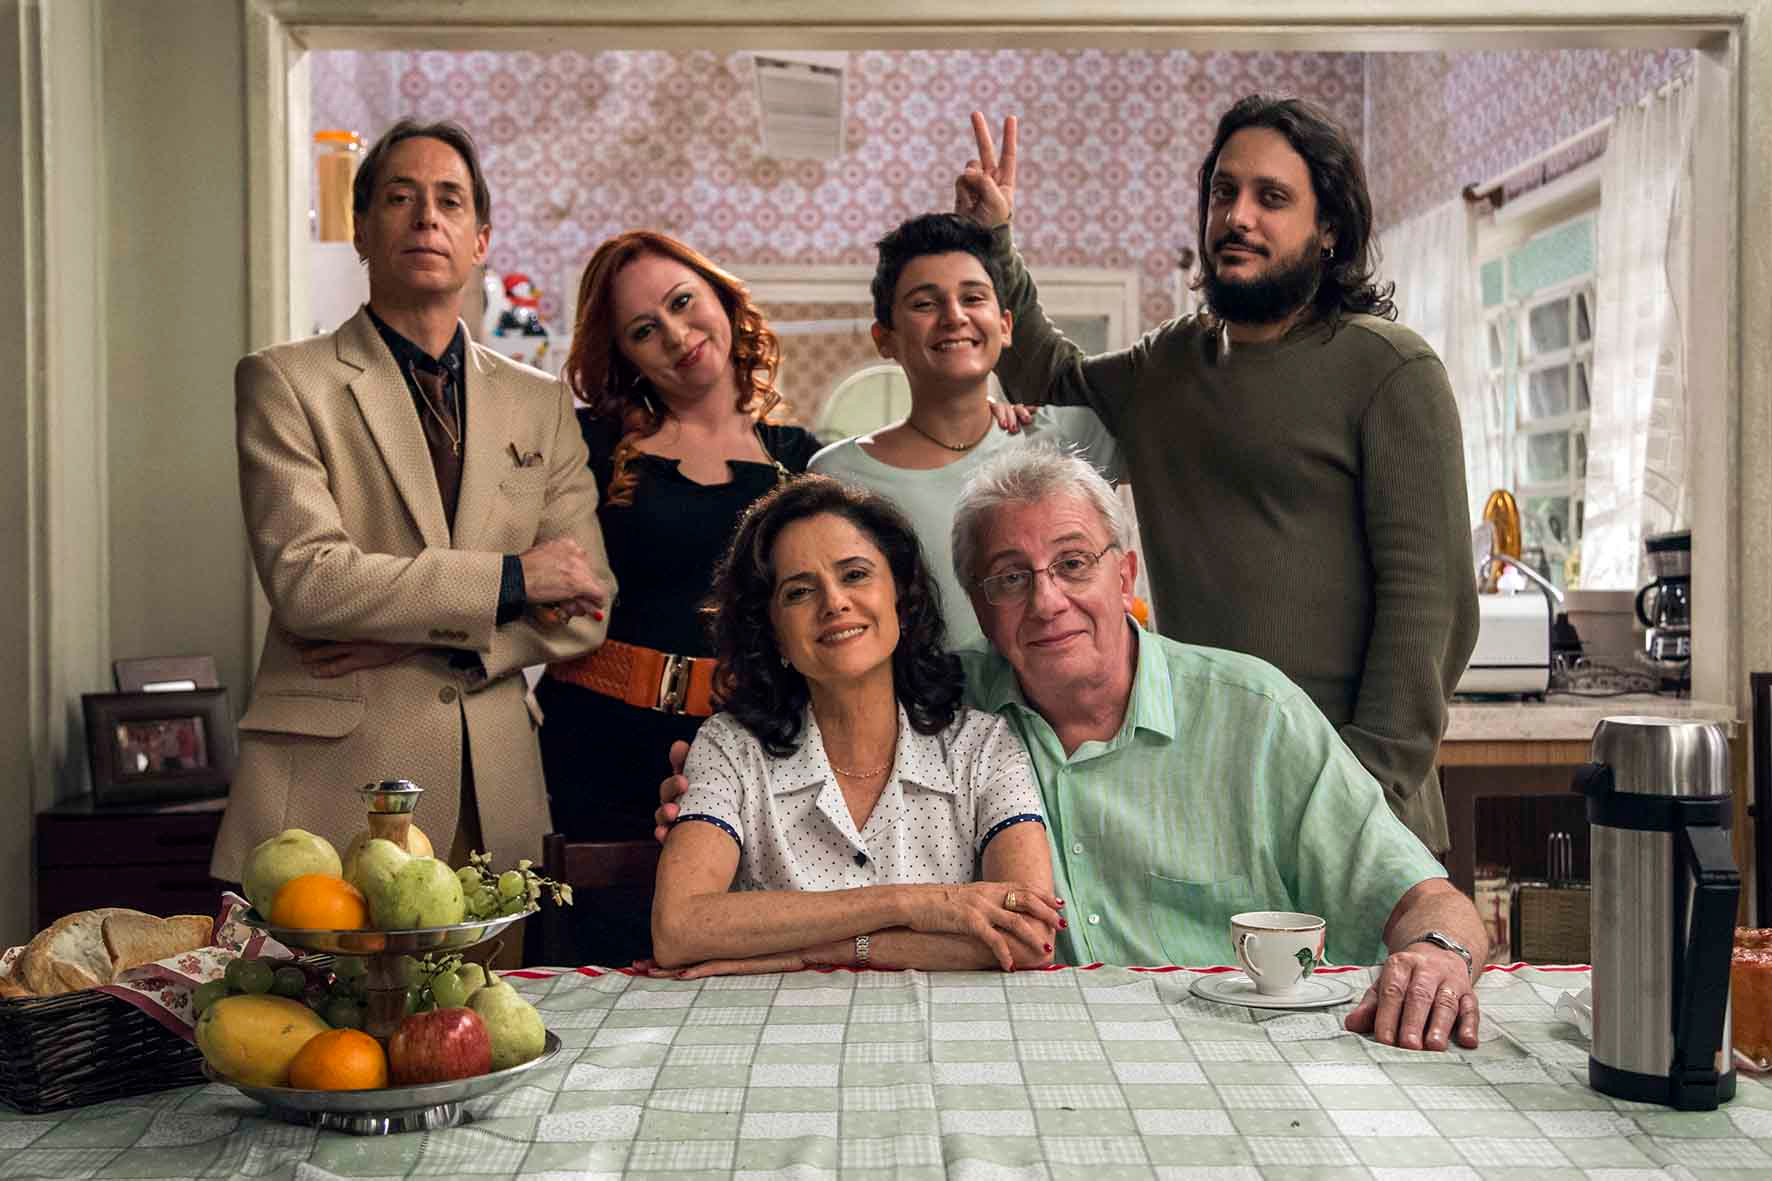 Álbum da Grande Família volta ao ar com episódios marcantes das 14 temporadas